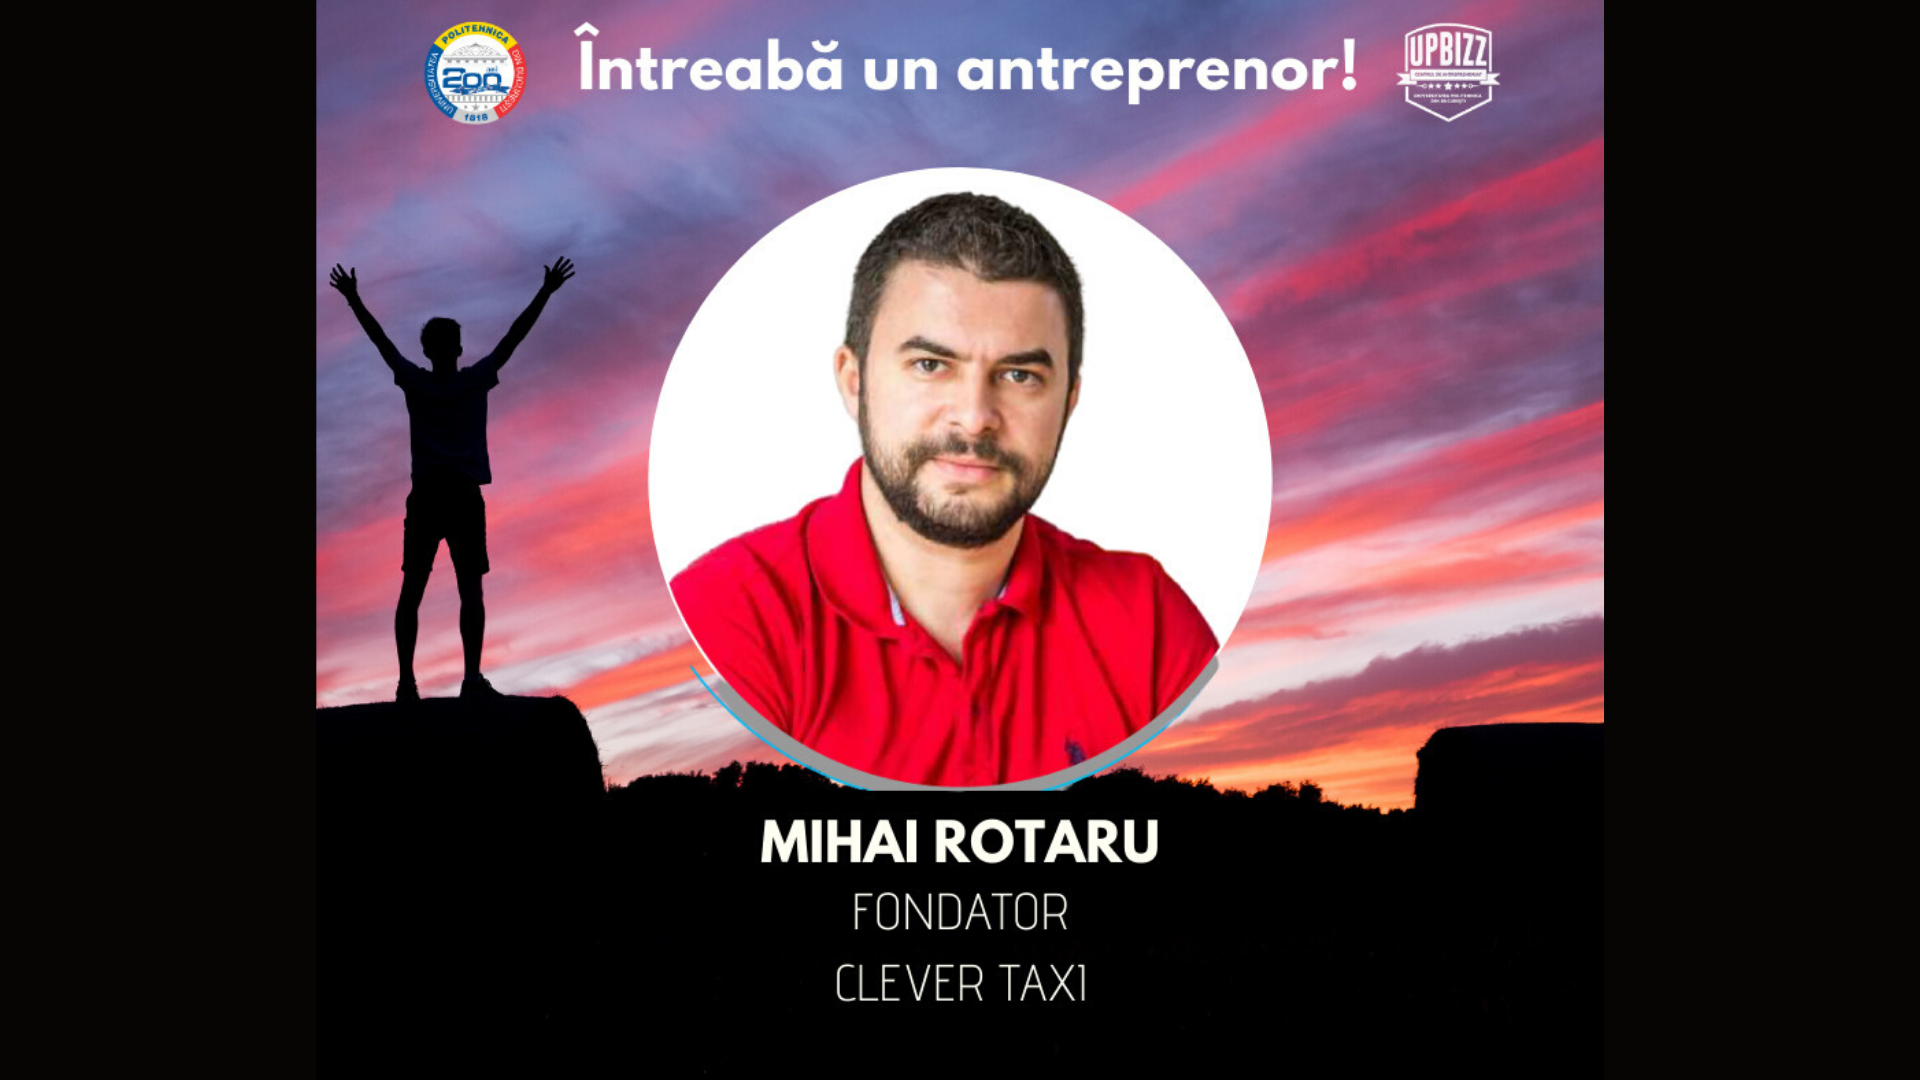 Interviu UPBizz – Mihai Rotaru / Fondator Clever Taxi